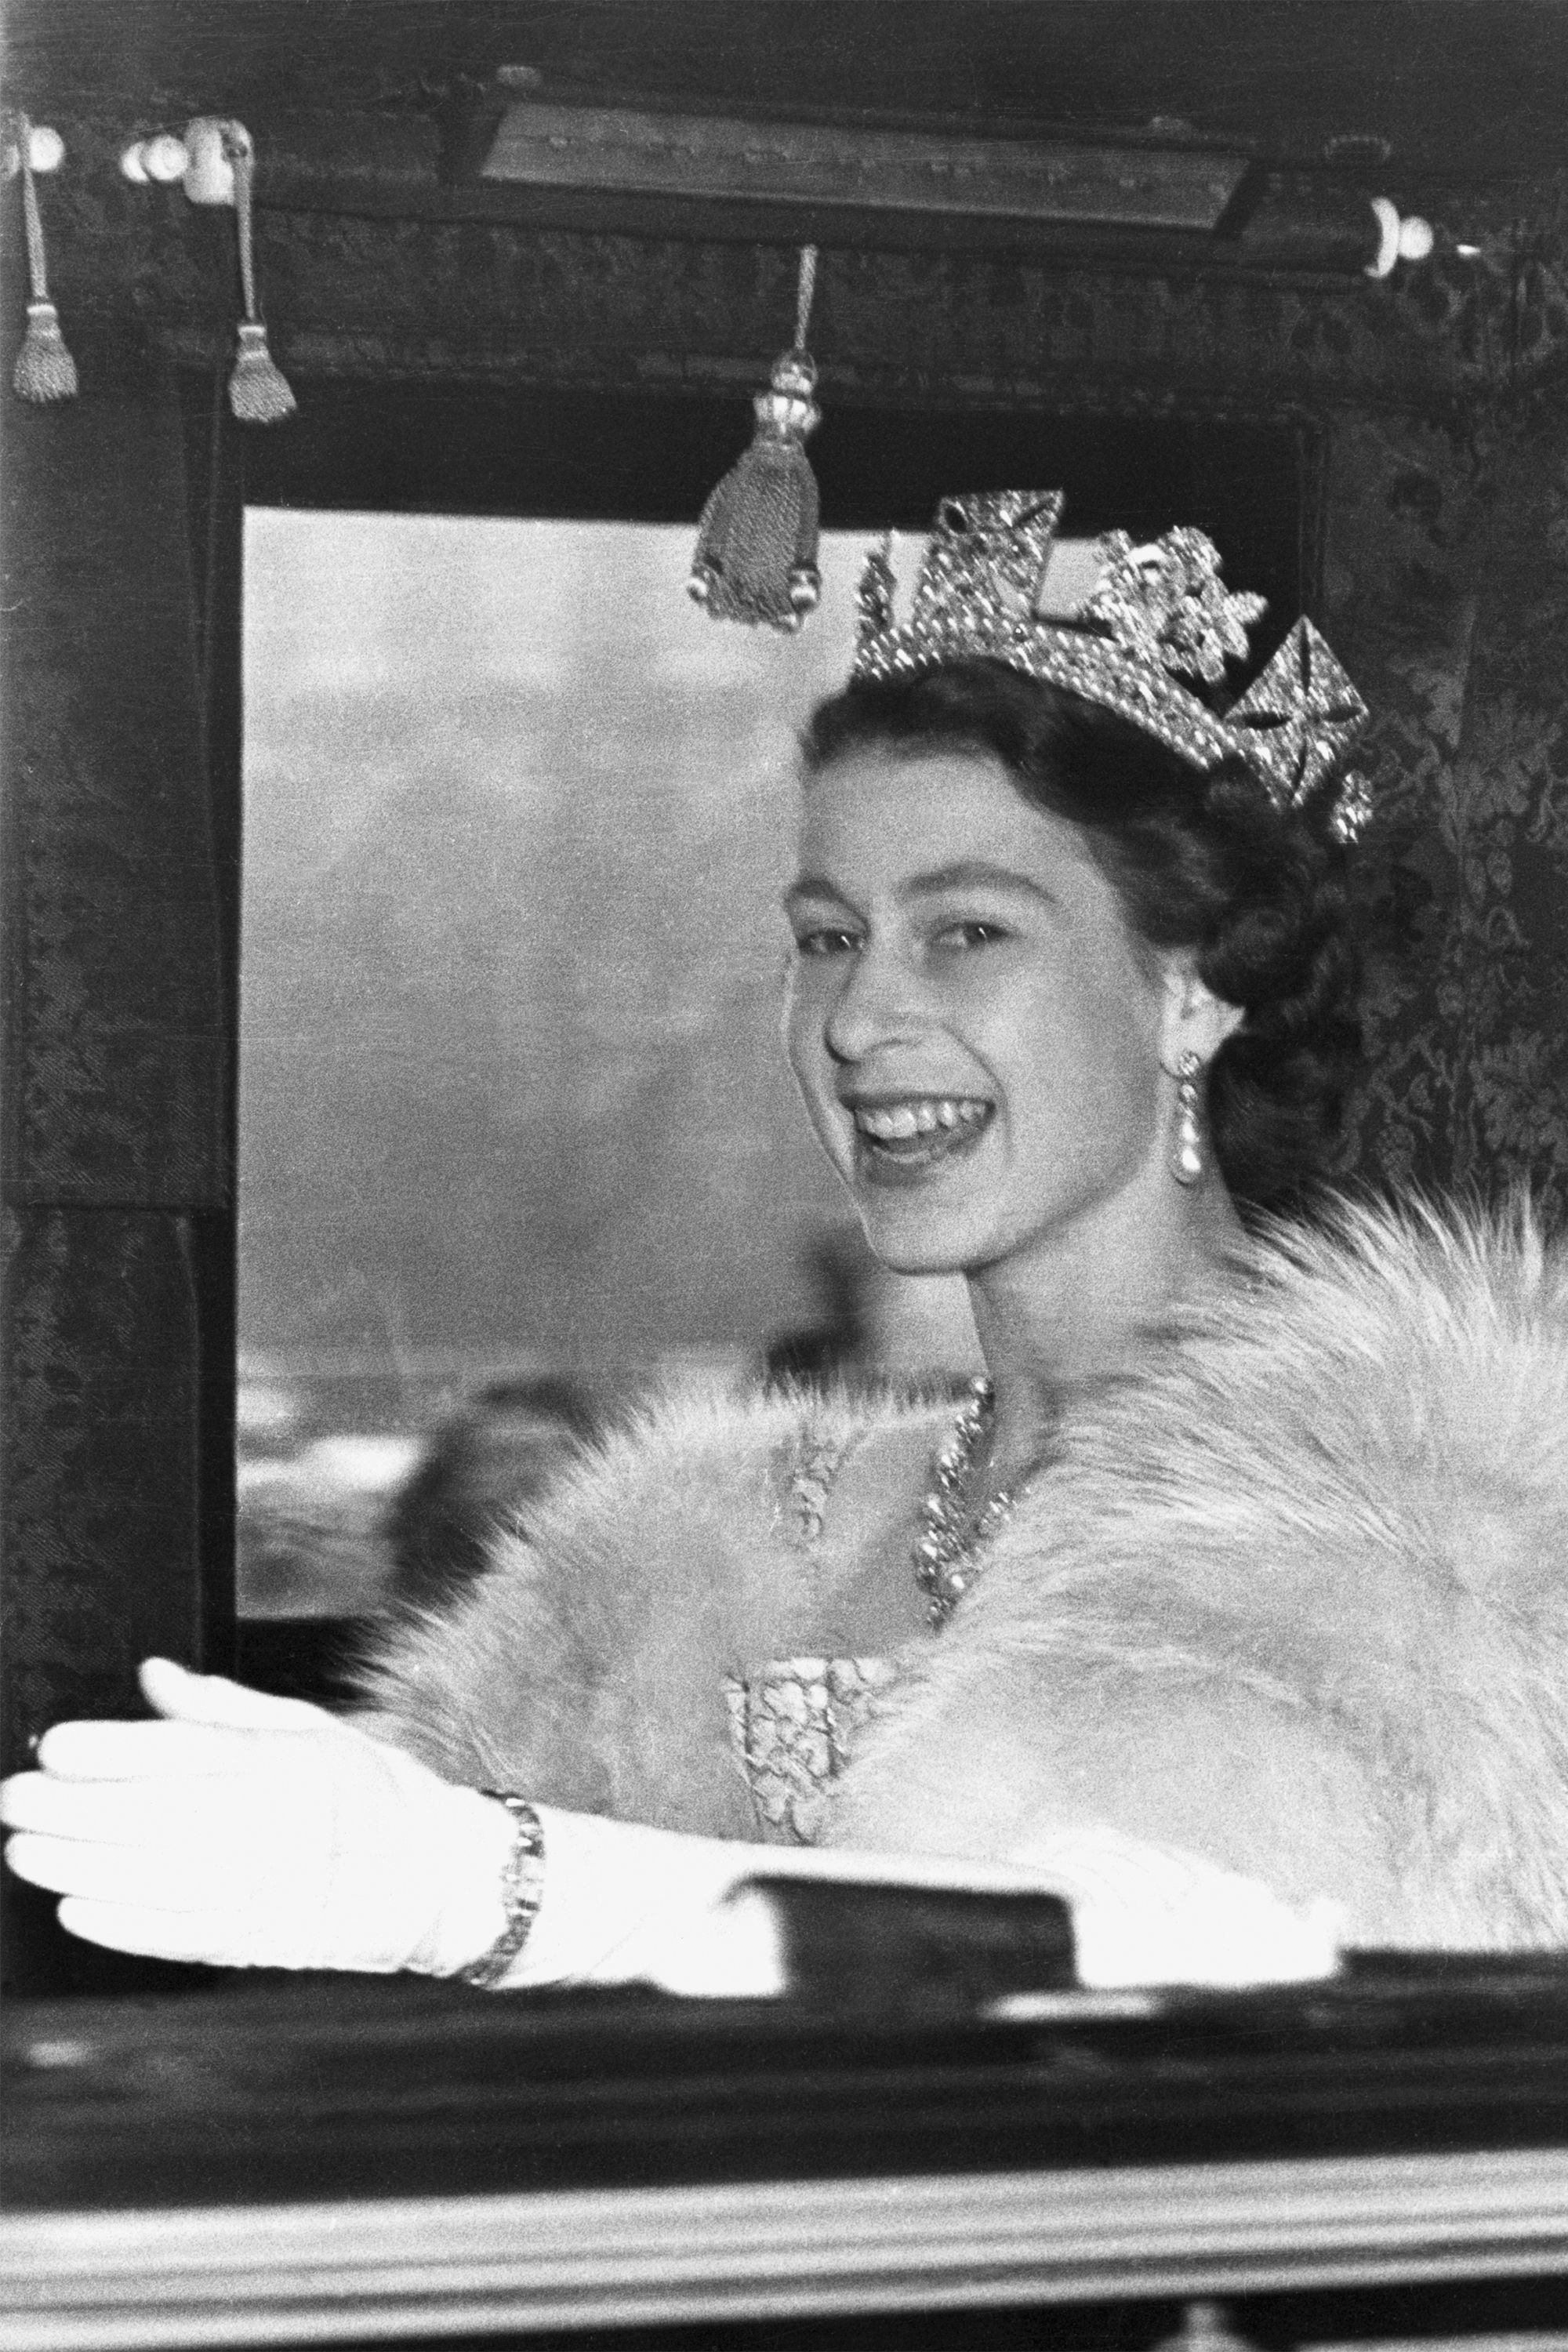 39 Fakten über Queen Elizabeth Ii Age 20 Queen Elizabeth Ii Was Crowned As Queen At The Age Of